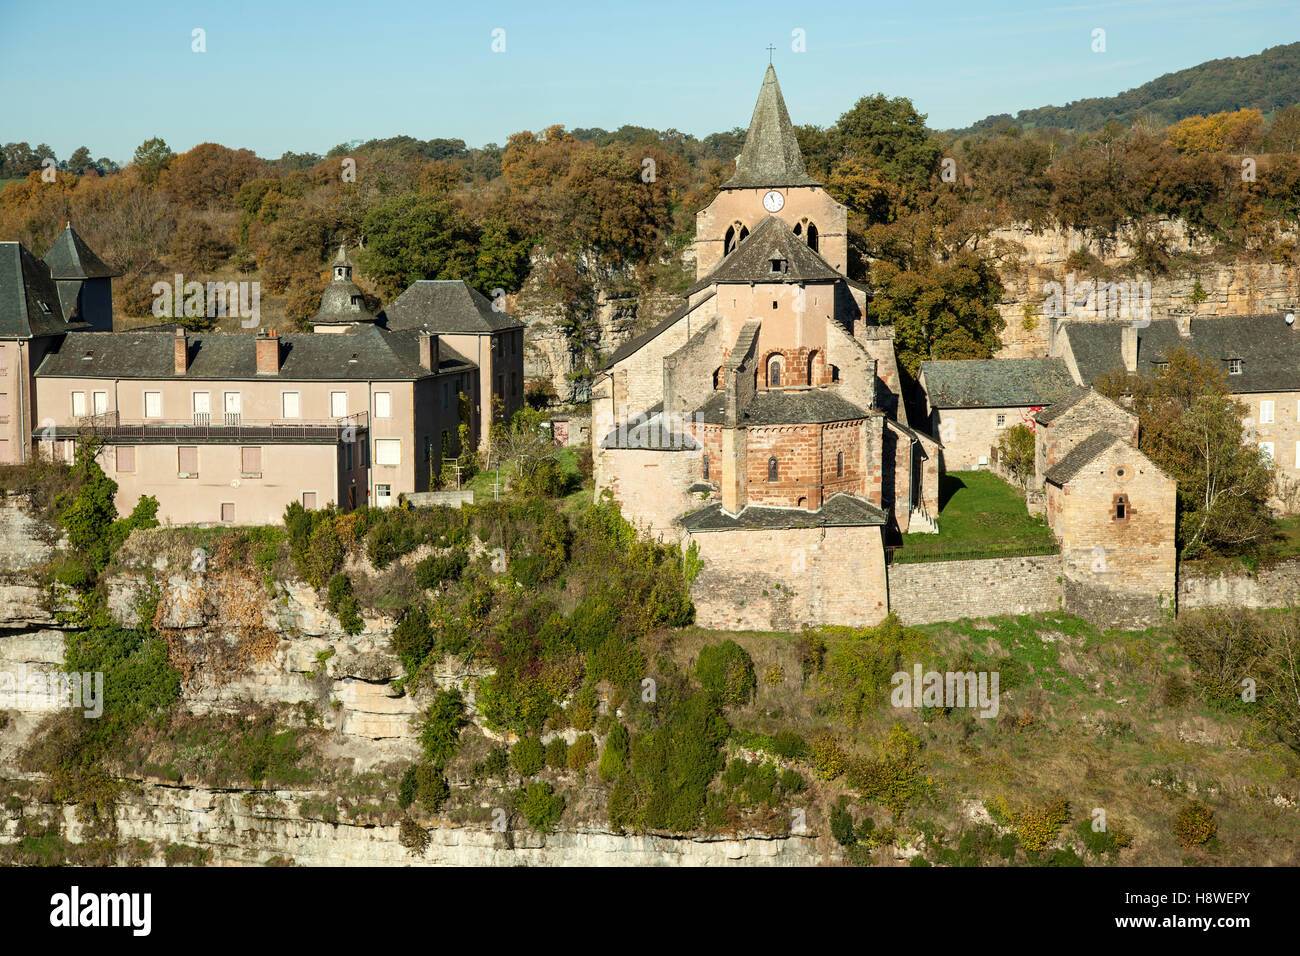 La pieve romanica di San Faust chiesa a Bozouls, in autunno (Aveyron - Francia). Si tratta di un luogo di sosta sulla Via di San Giacomo (Spagna). Foto Stock